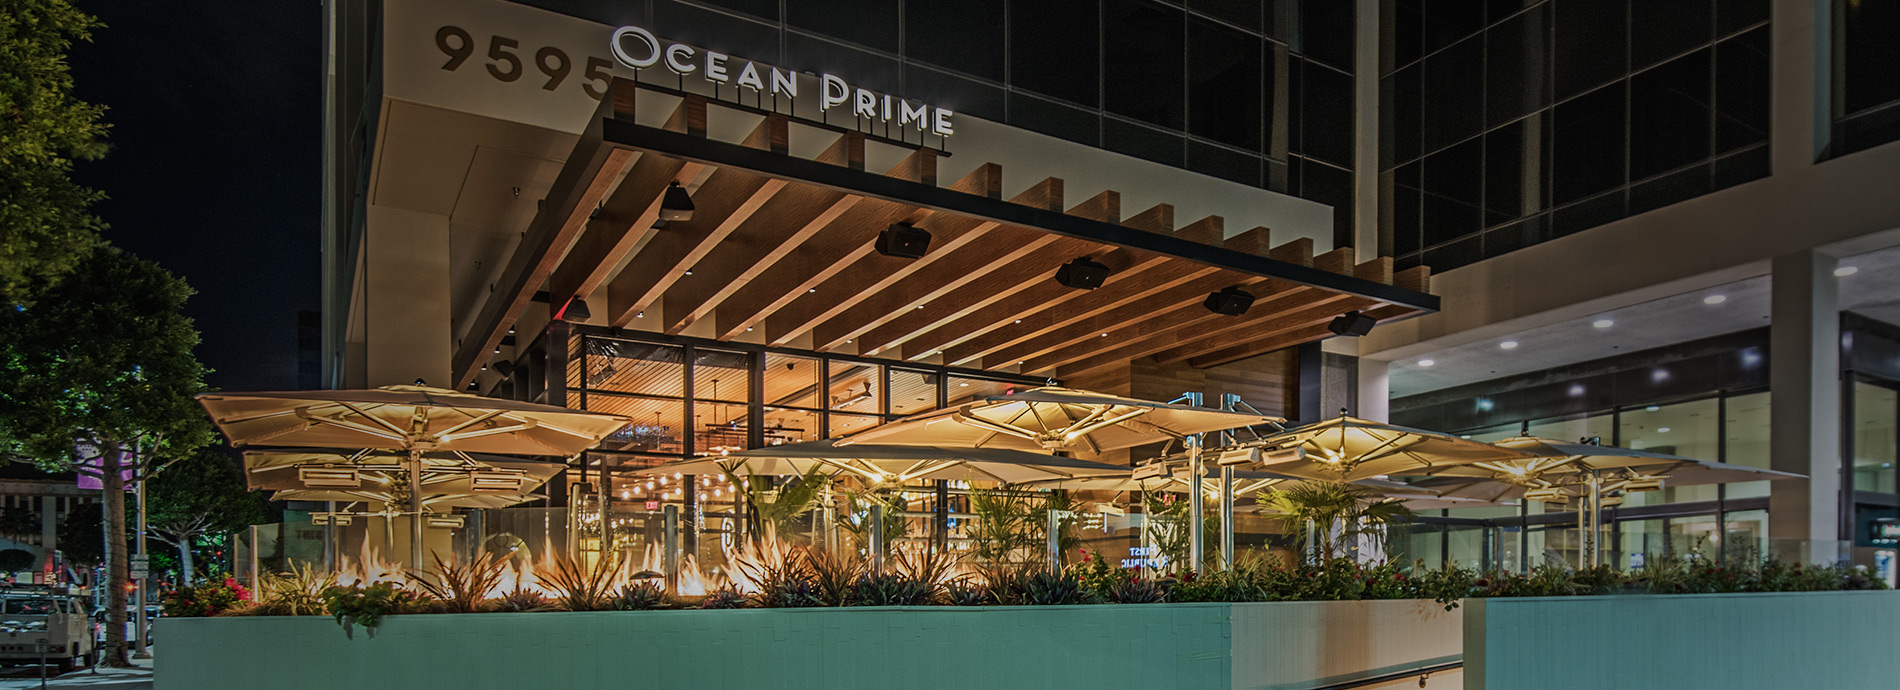 Ocean Prime, Restoran Seafood yang Wajib Kamu Kunjungi Ketika Pergi ke Denver